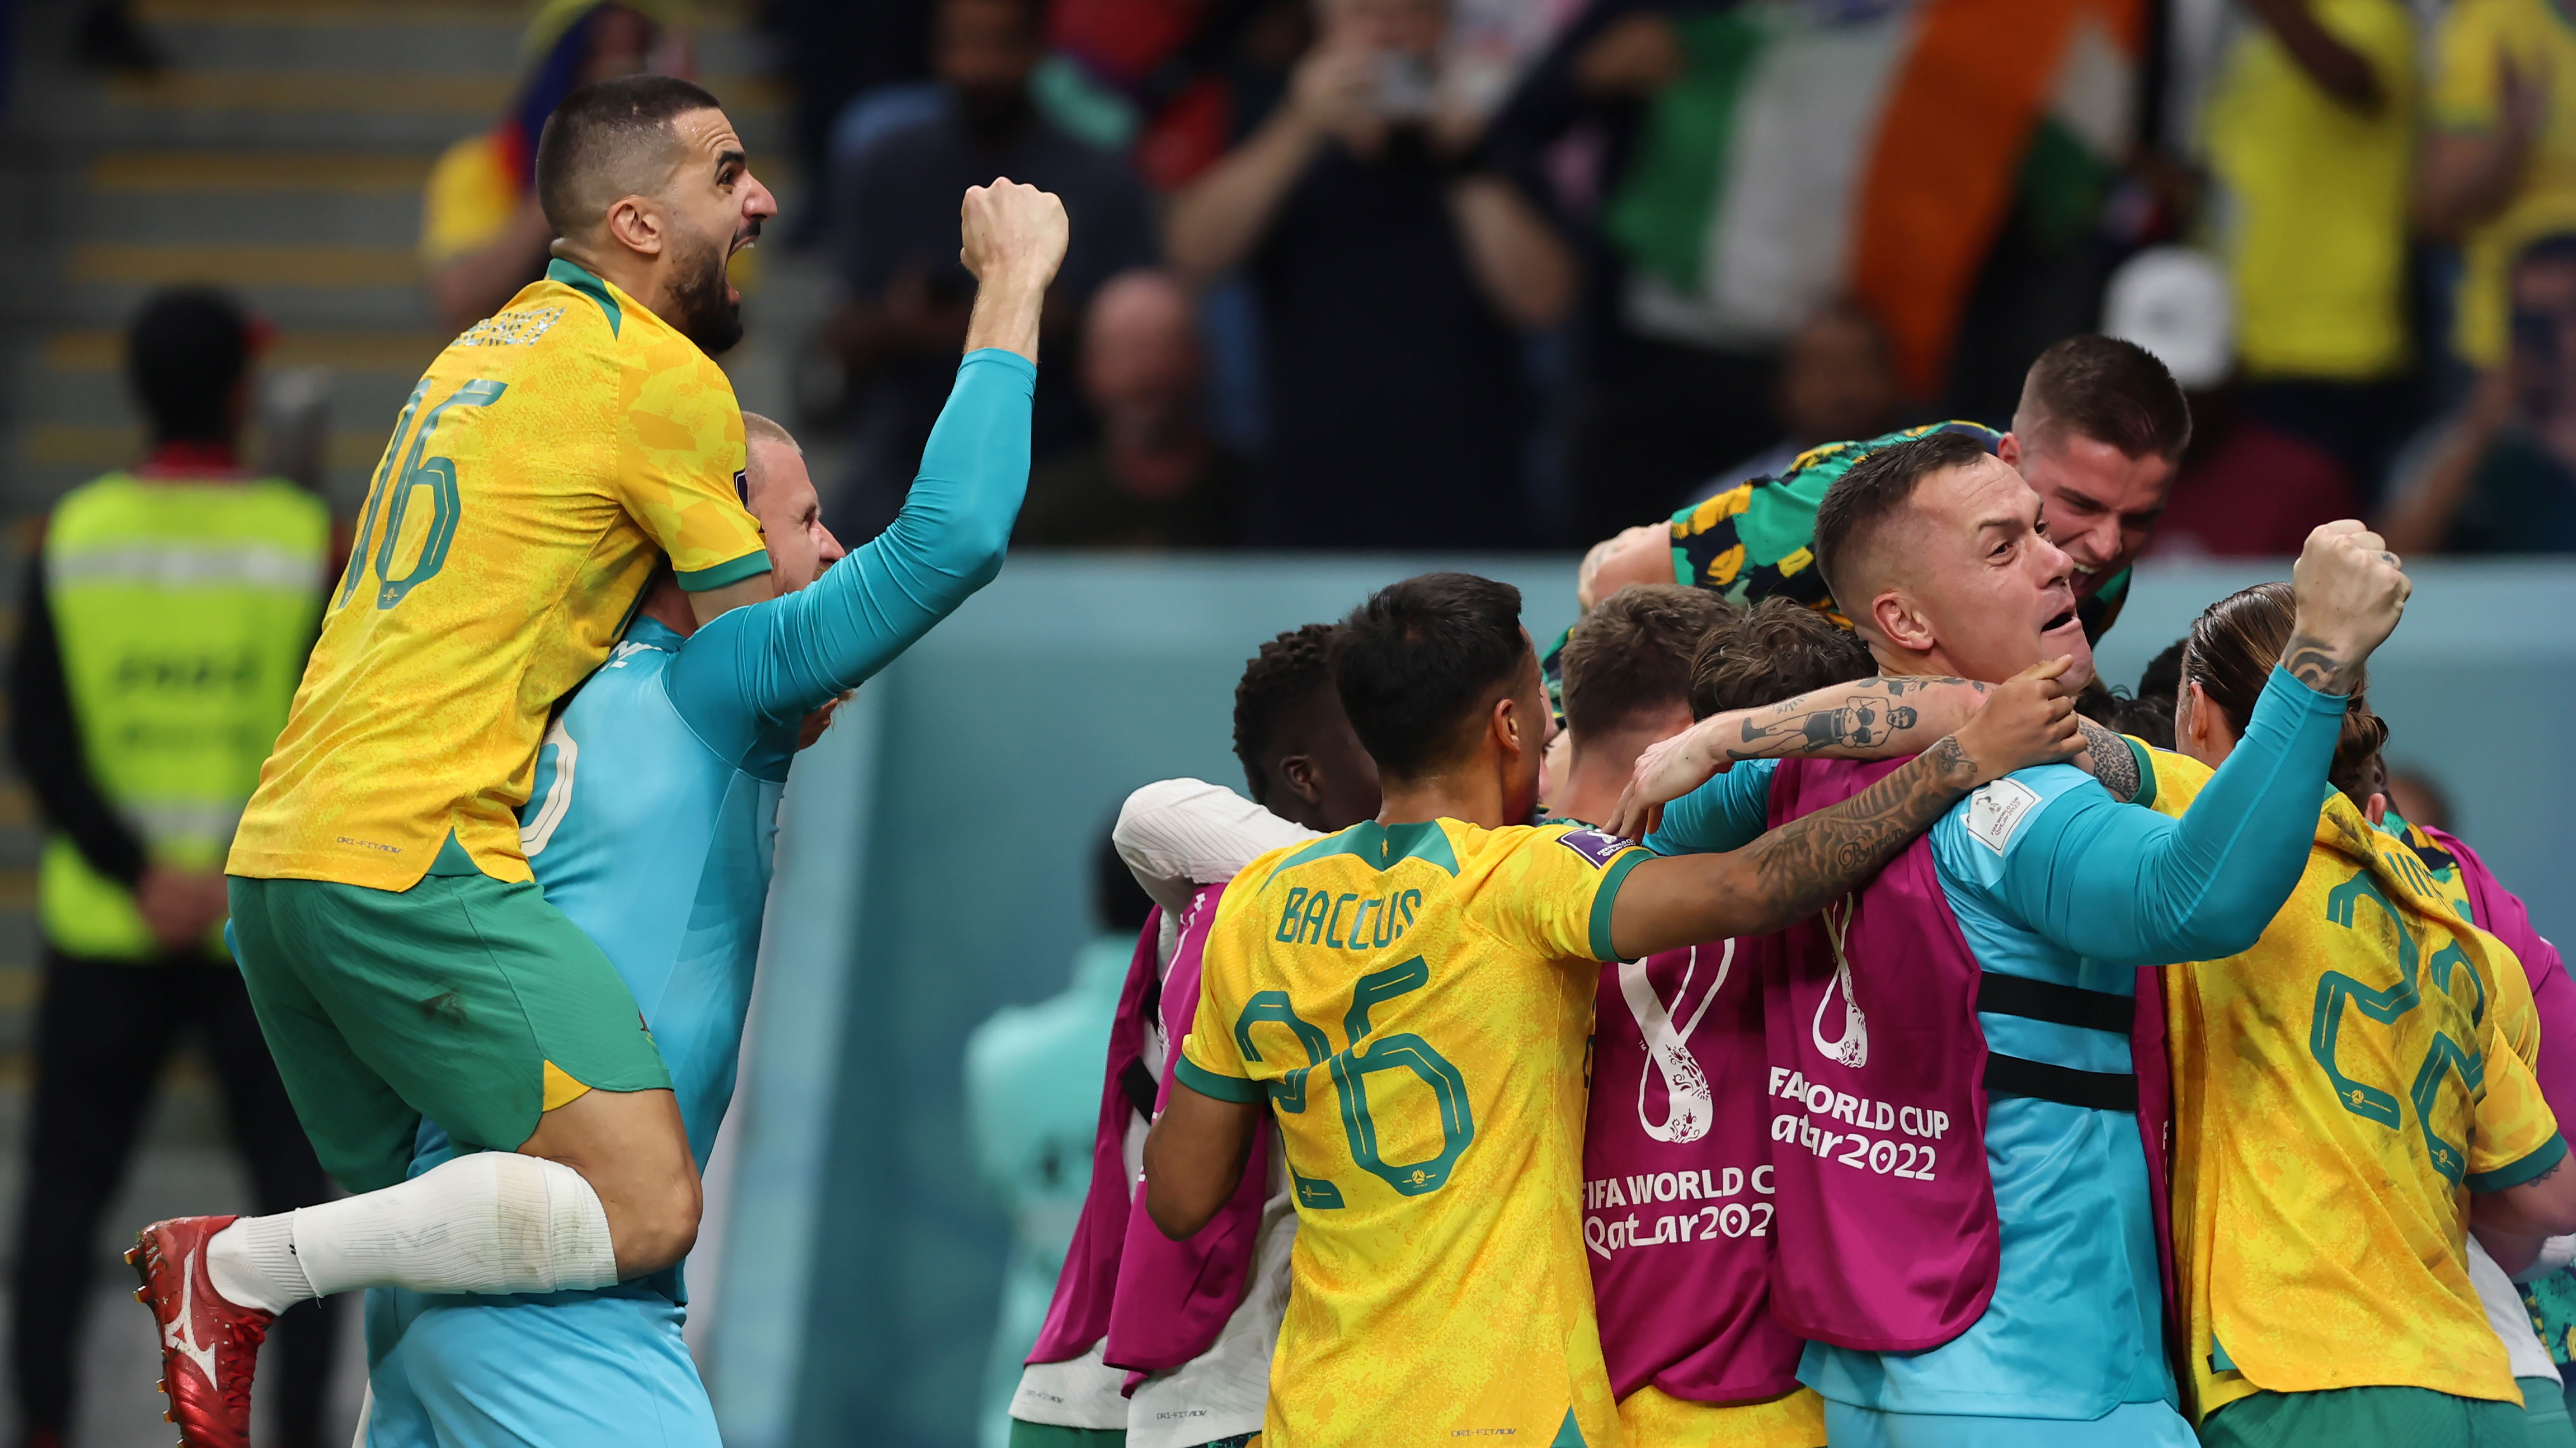 Coupe du monde de football 2022 | Les Socceroos battent le Danemark et se qualifient pour les huitièmes de finale